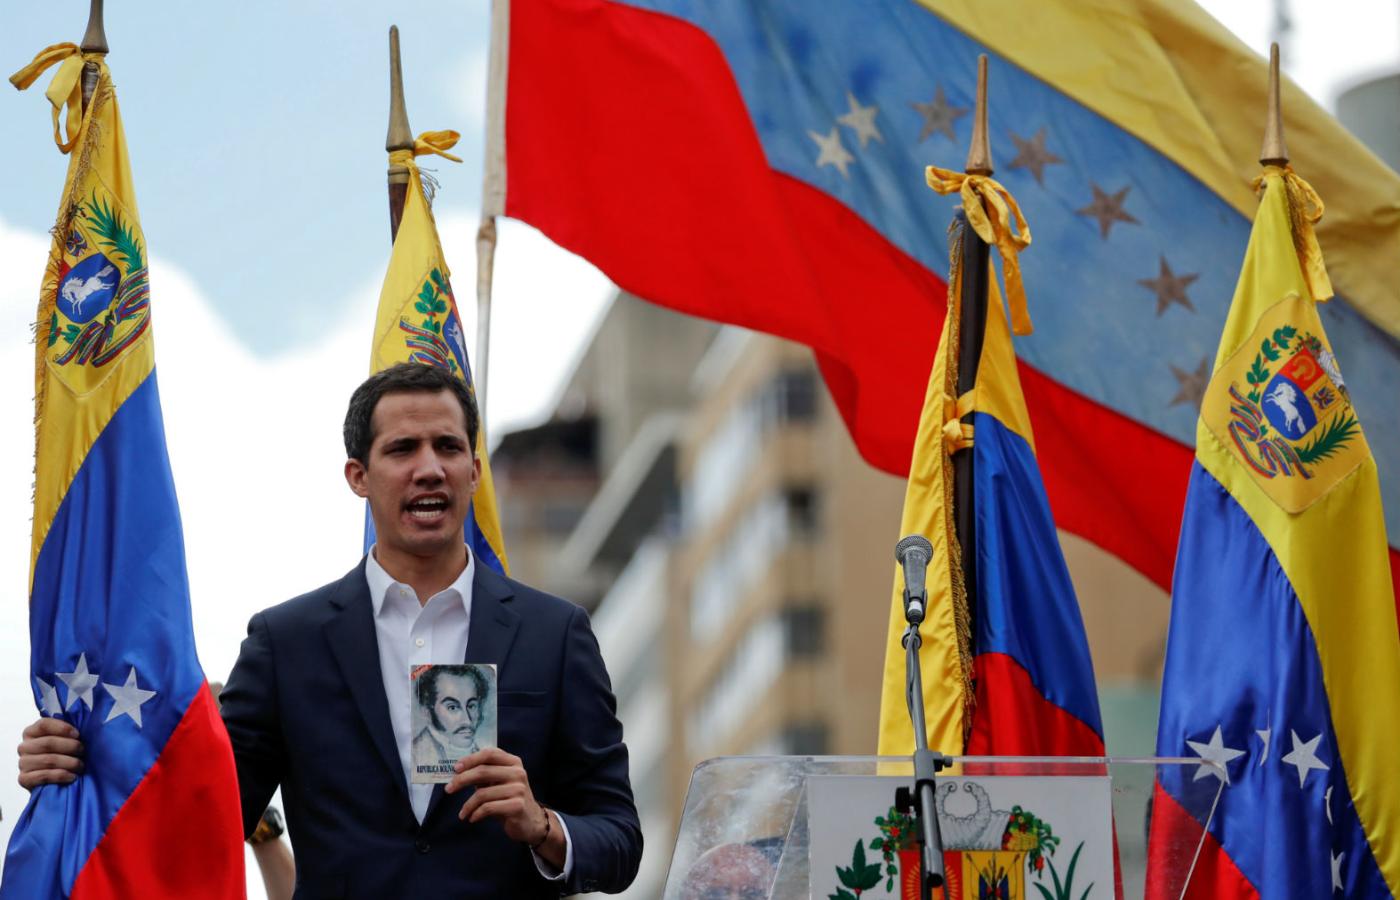 Przewodniczący parlamentu Juan Guaidó ogłosił się wczoraj tymczasowym prezydentem Wenezueli.